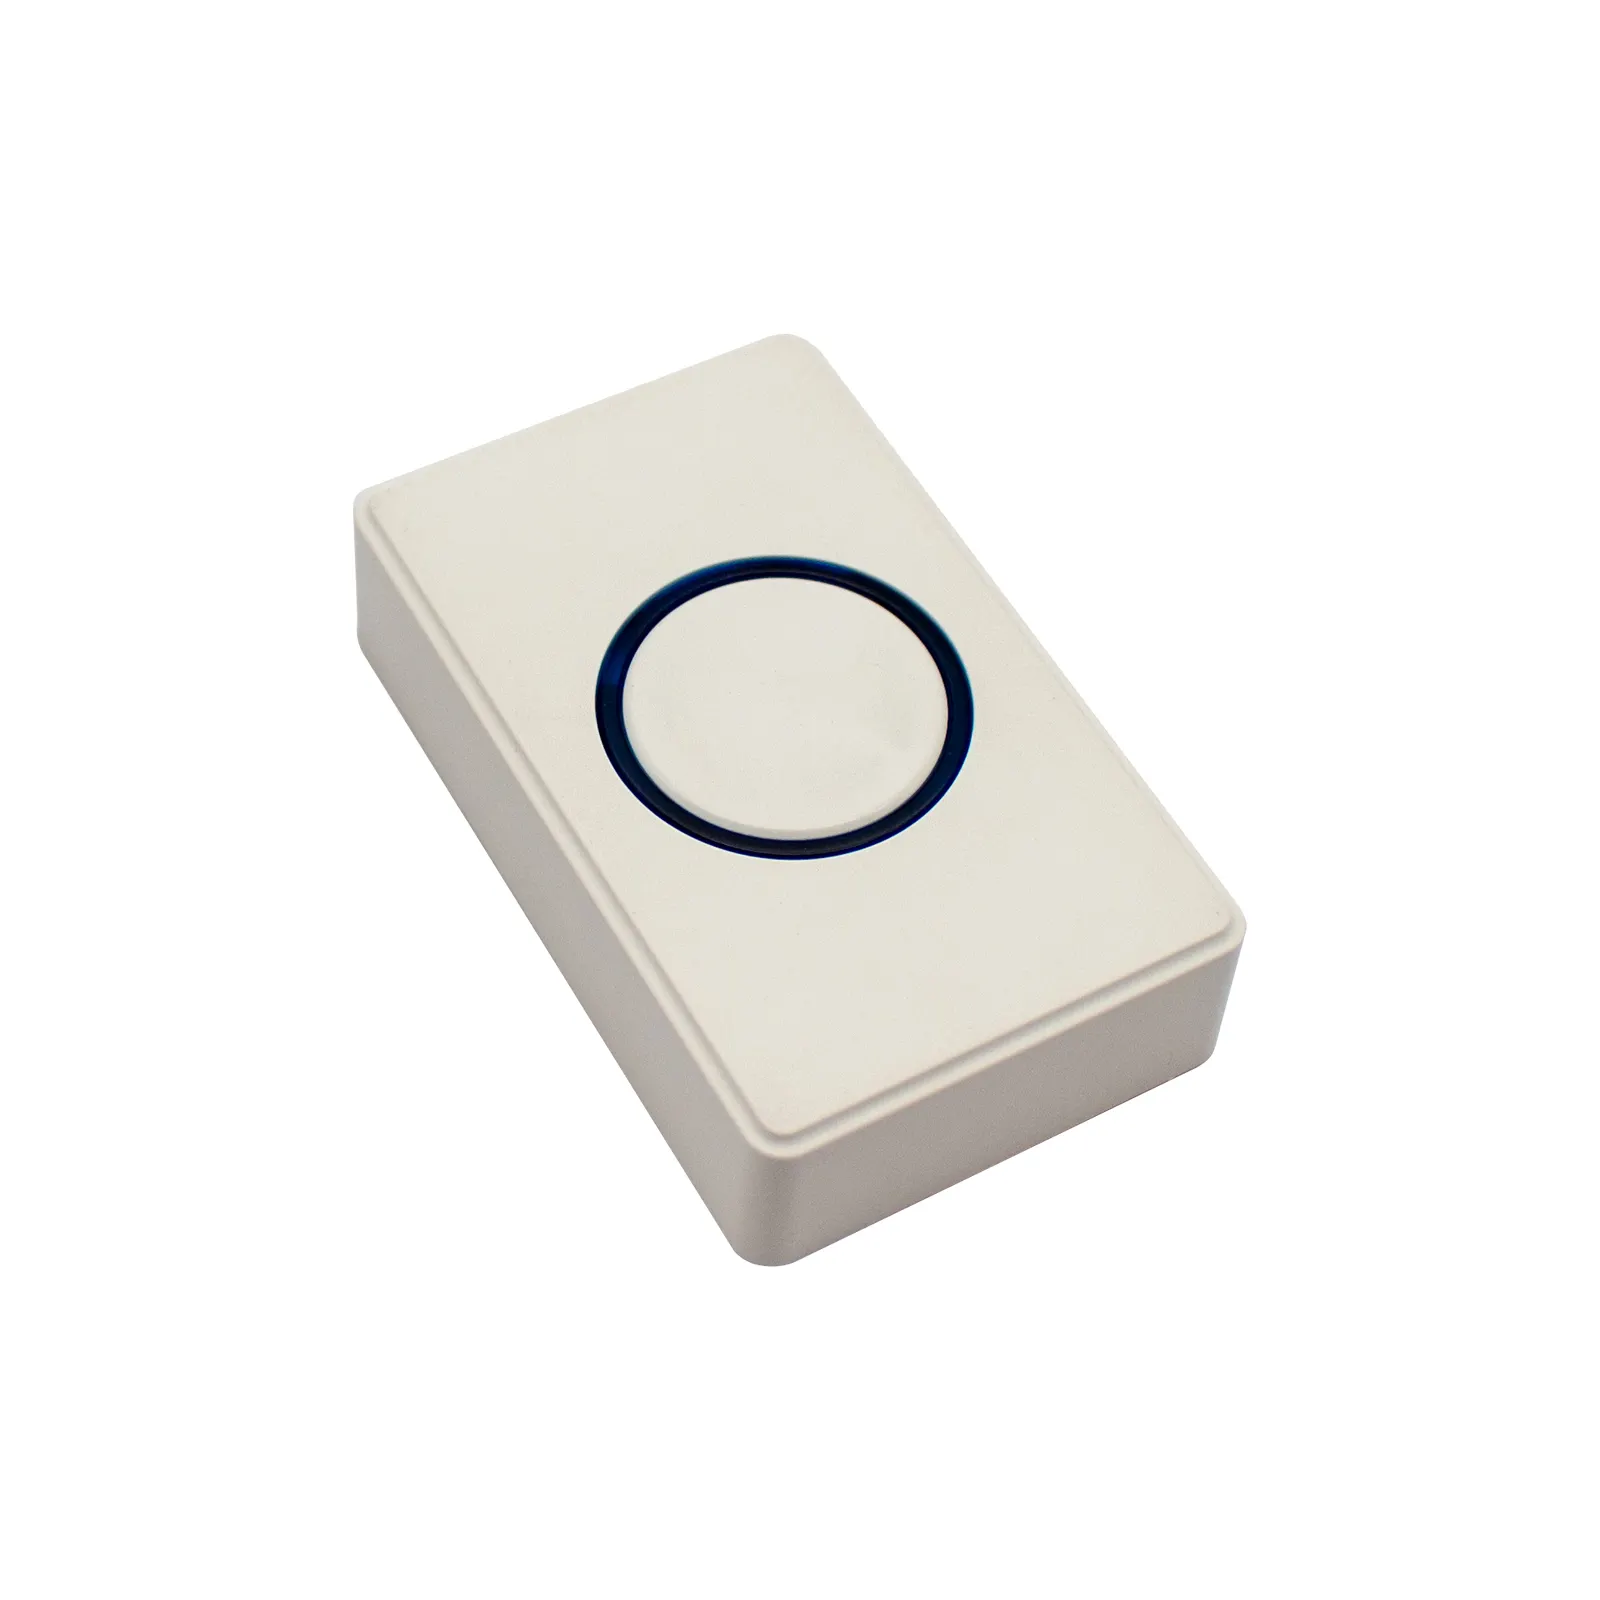 Balise Bluetooth Ultra-basse consommation capteur d'accélérateur avec bouton de commutation Ble5.0 PCBA balise